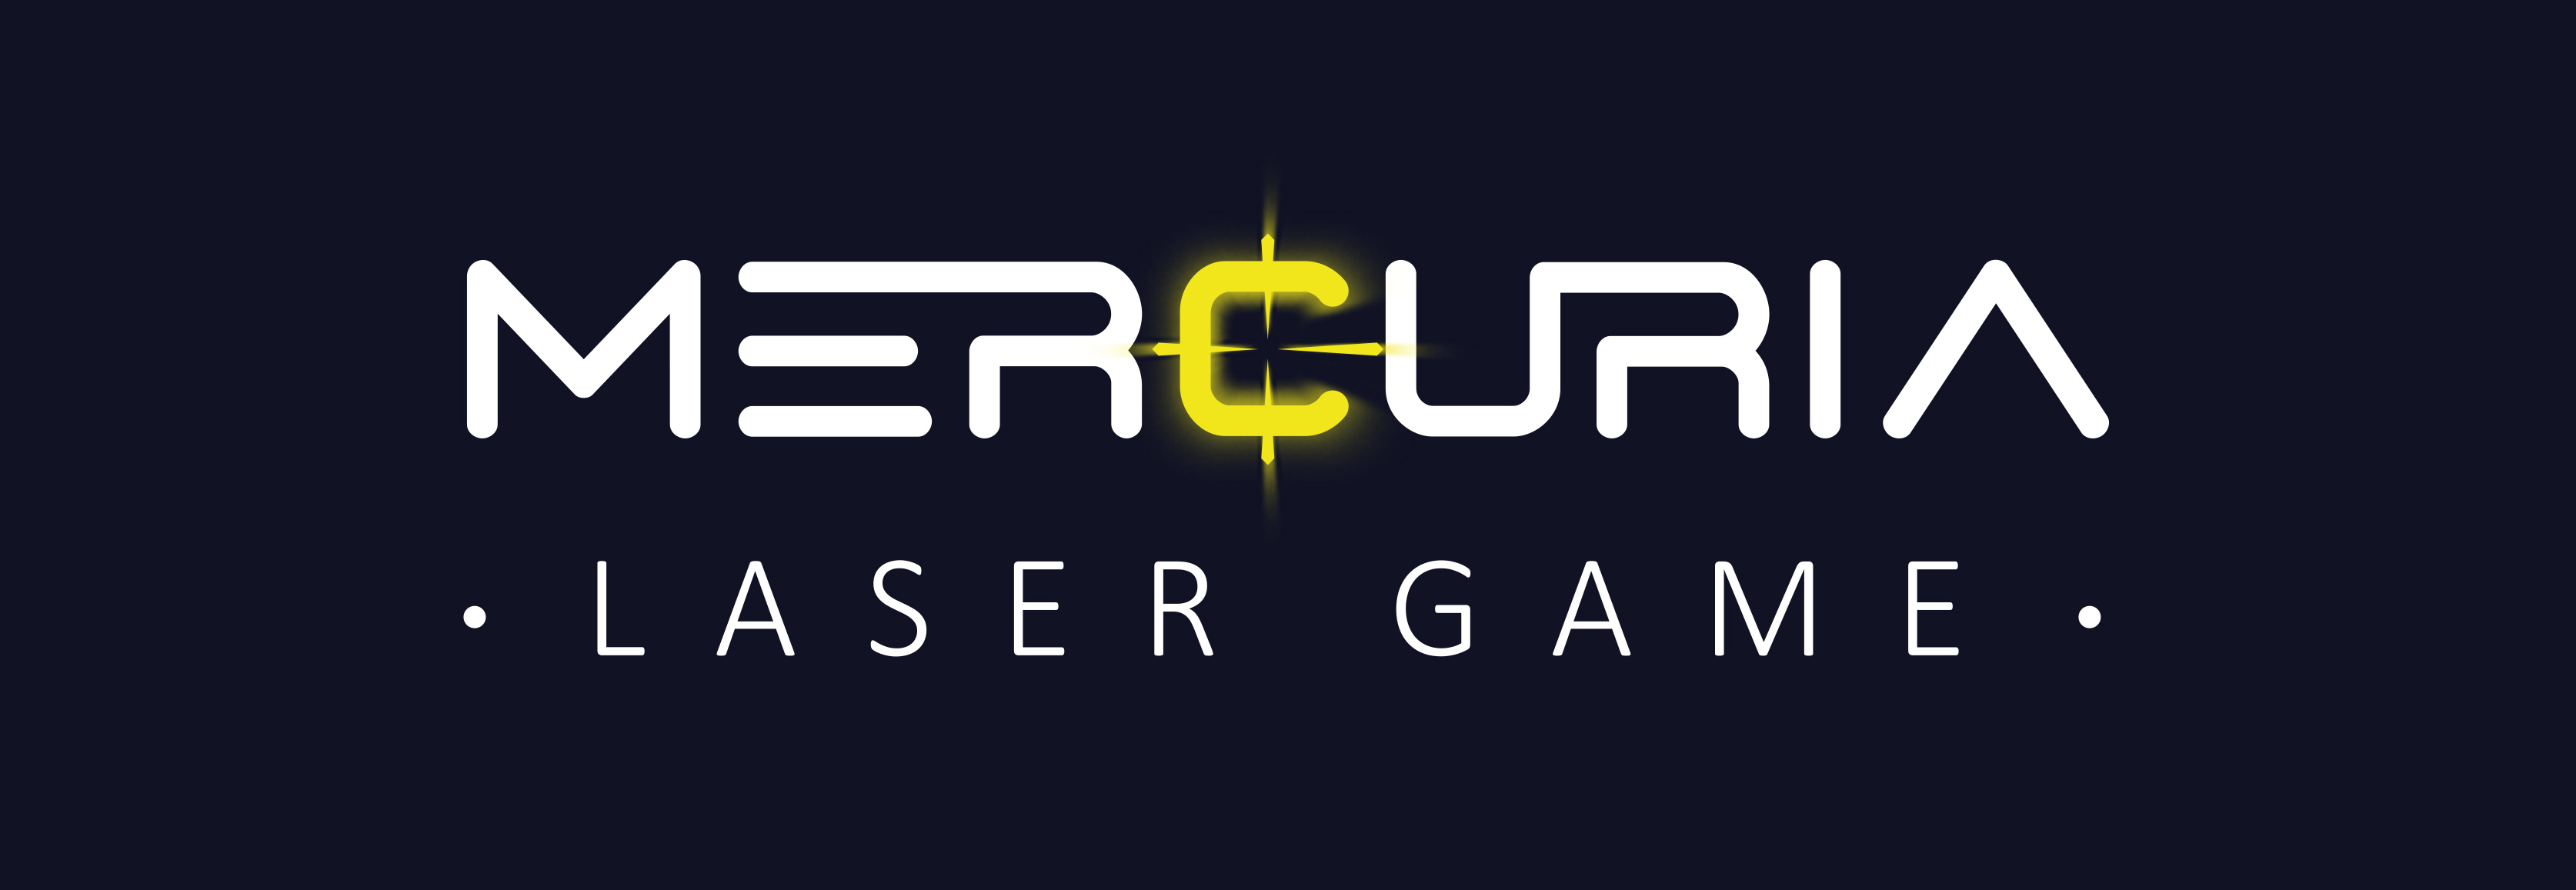 Mercuria Laser Game logo záře - modré pozadí